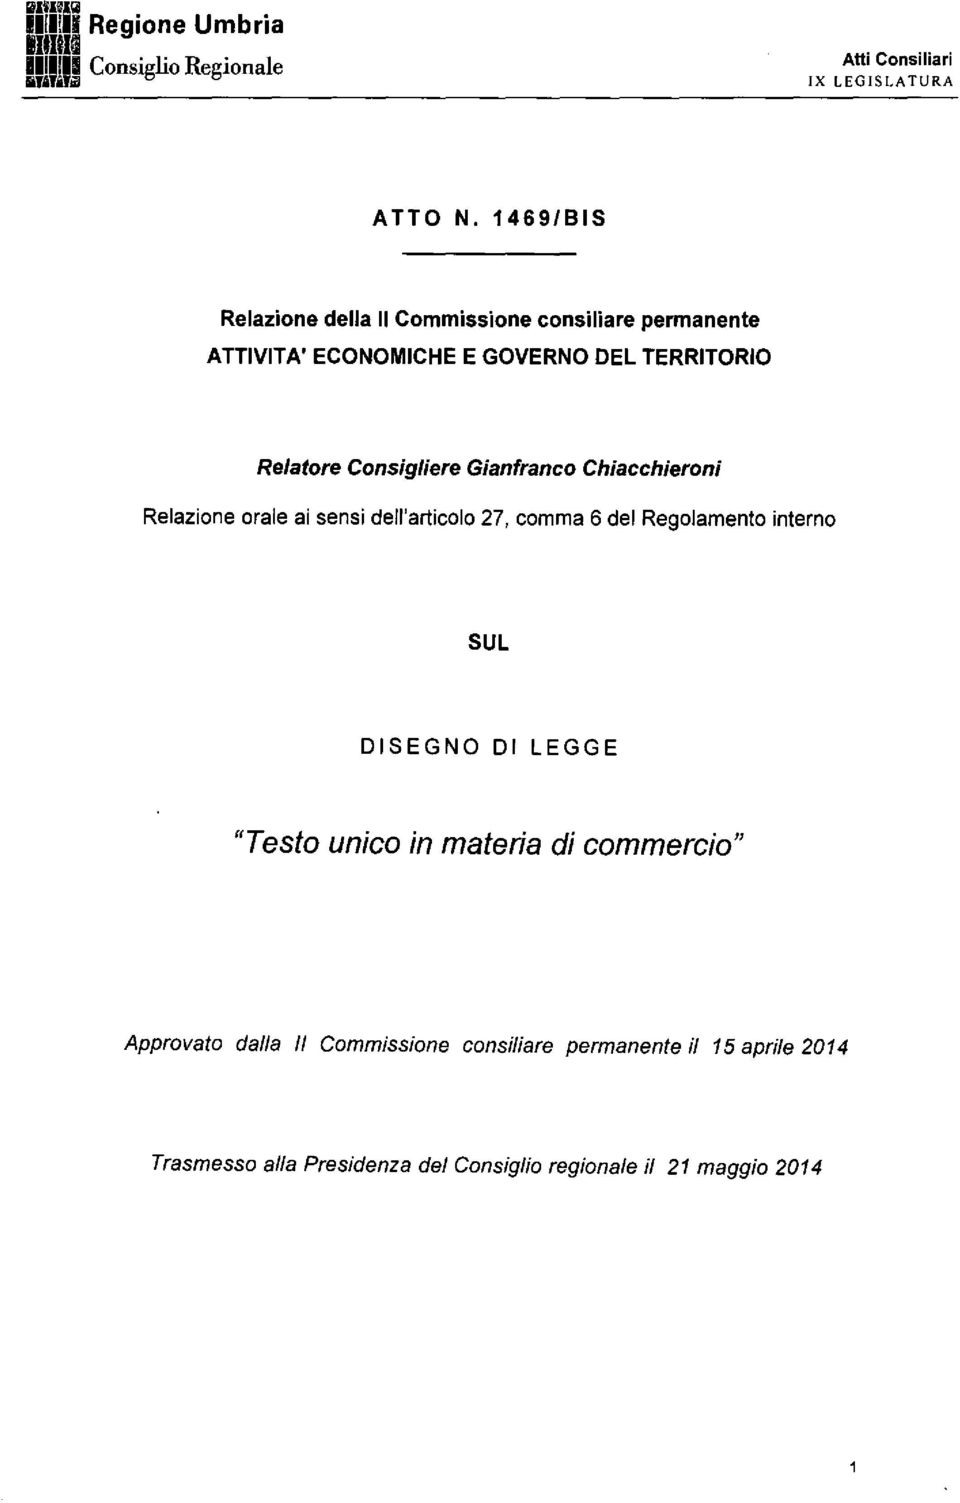 Consigliere Gianfranco Chiacchieroni Relazione orale ai sensi dell'articolo 27, comma 6 del Regolamento interno 5UL DISEGNO DI